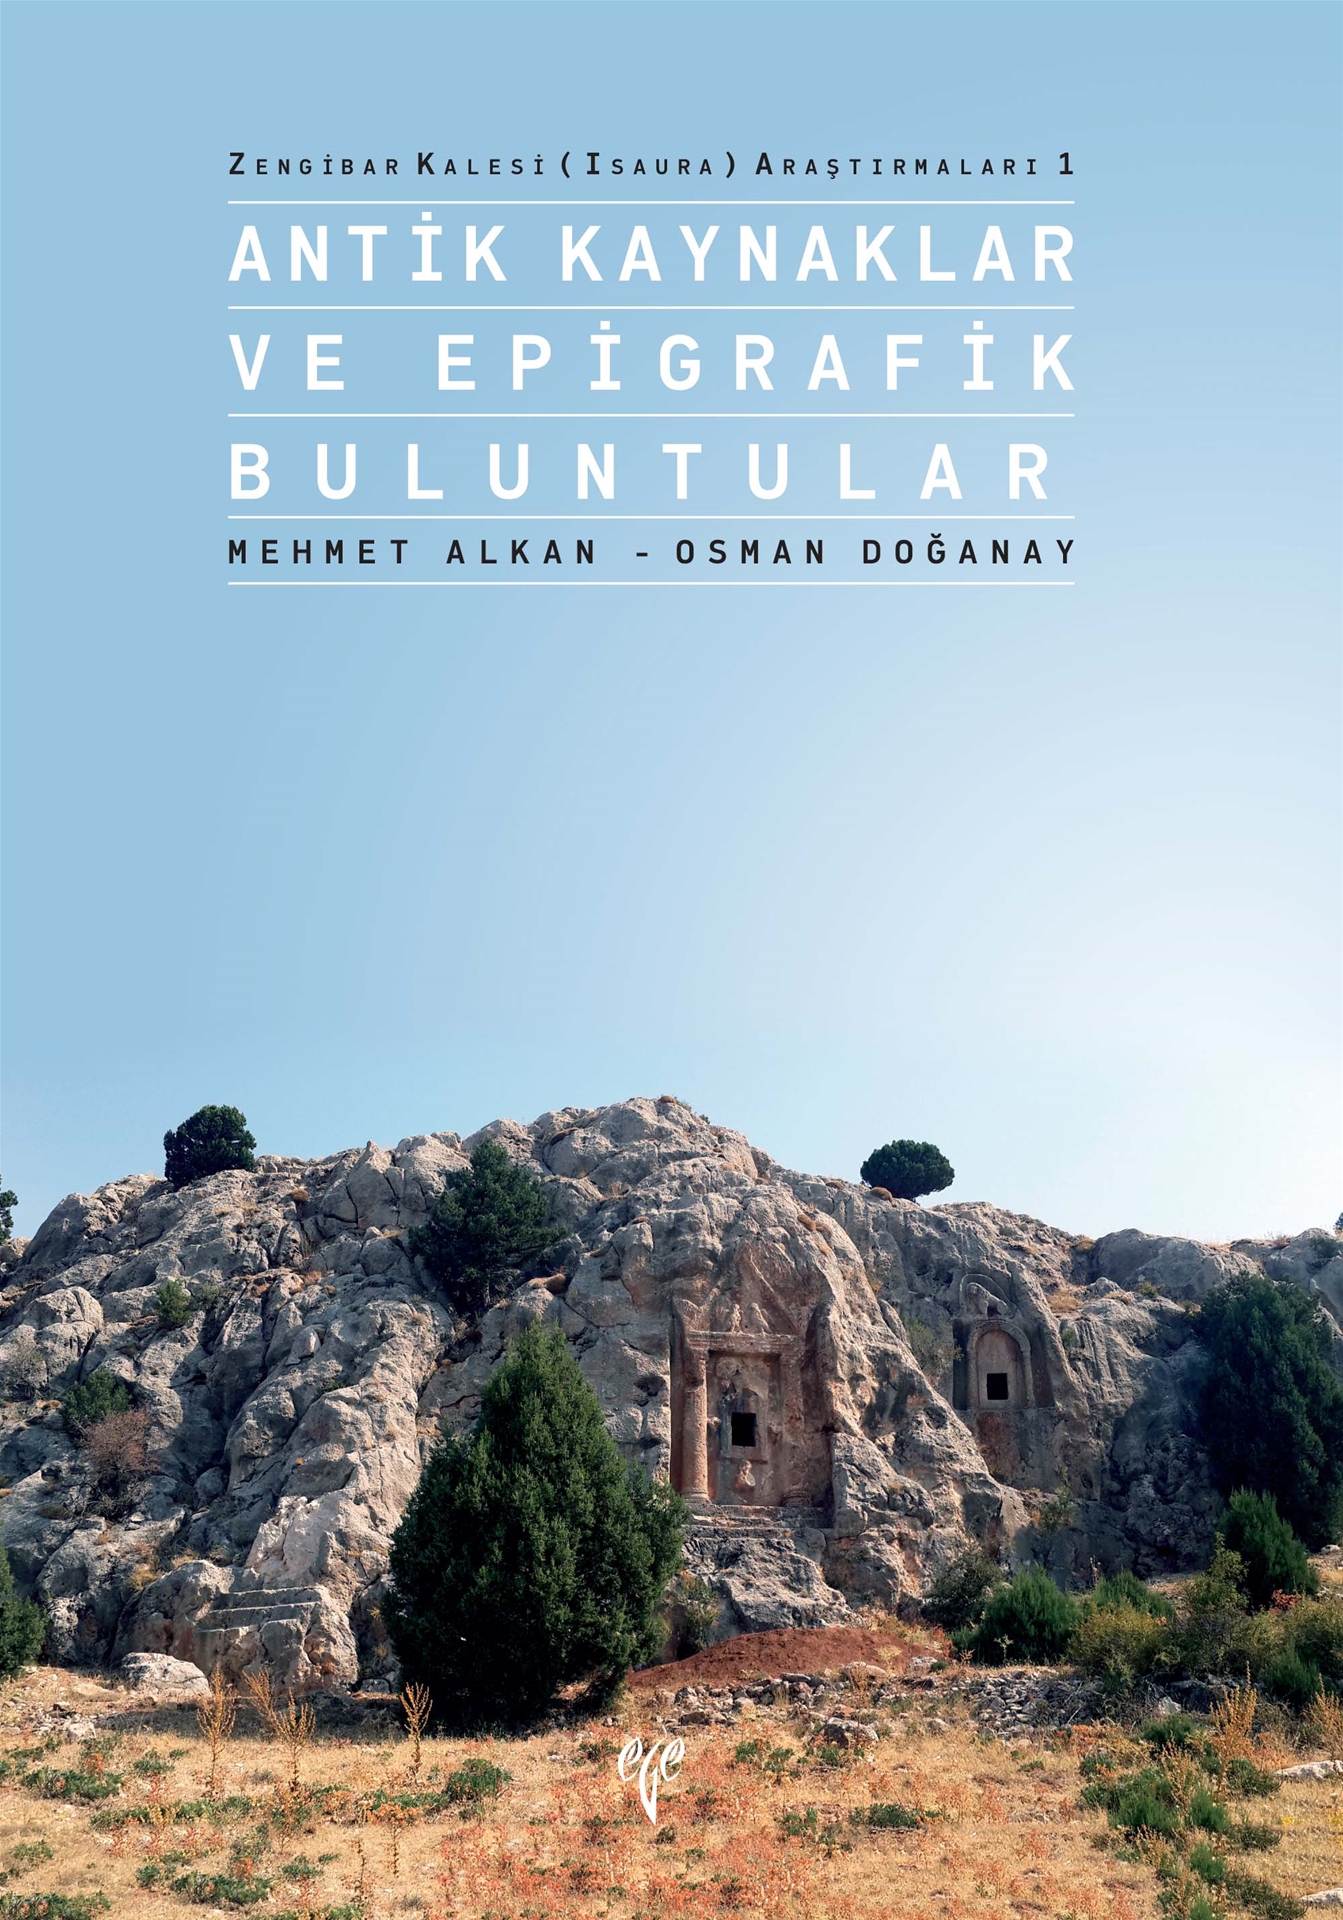 Alkan, Mehmet – Osman Doğanay : Zengibar Kalesi (Isaura) Araştırmaları 1 – Antik Kaynaklar ve Epigrafik Buluntular